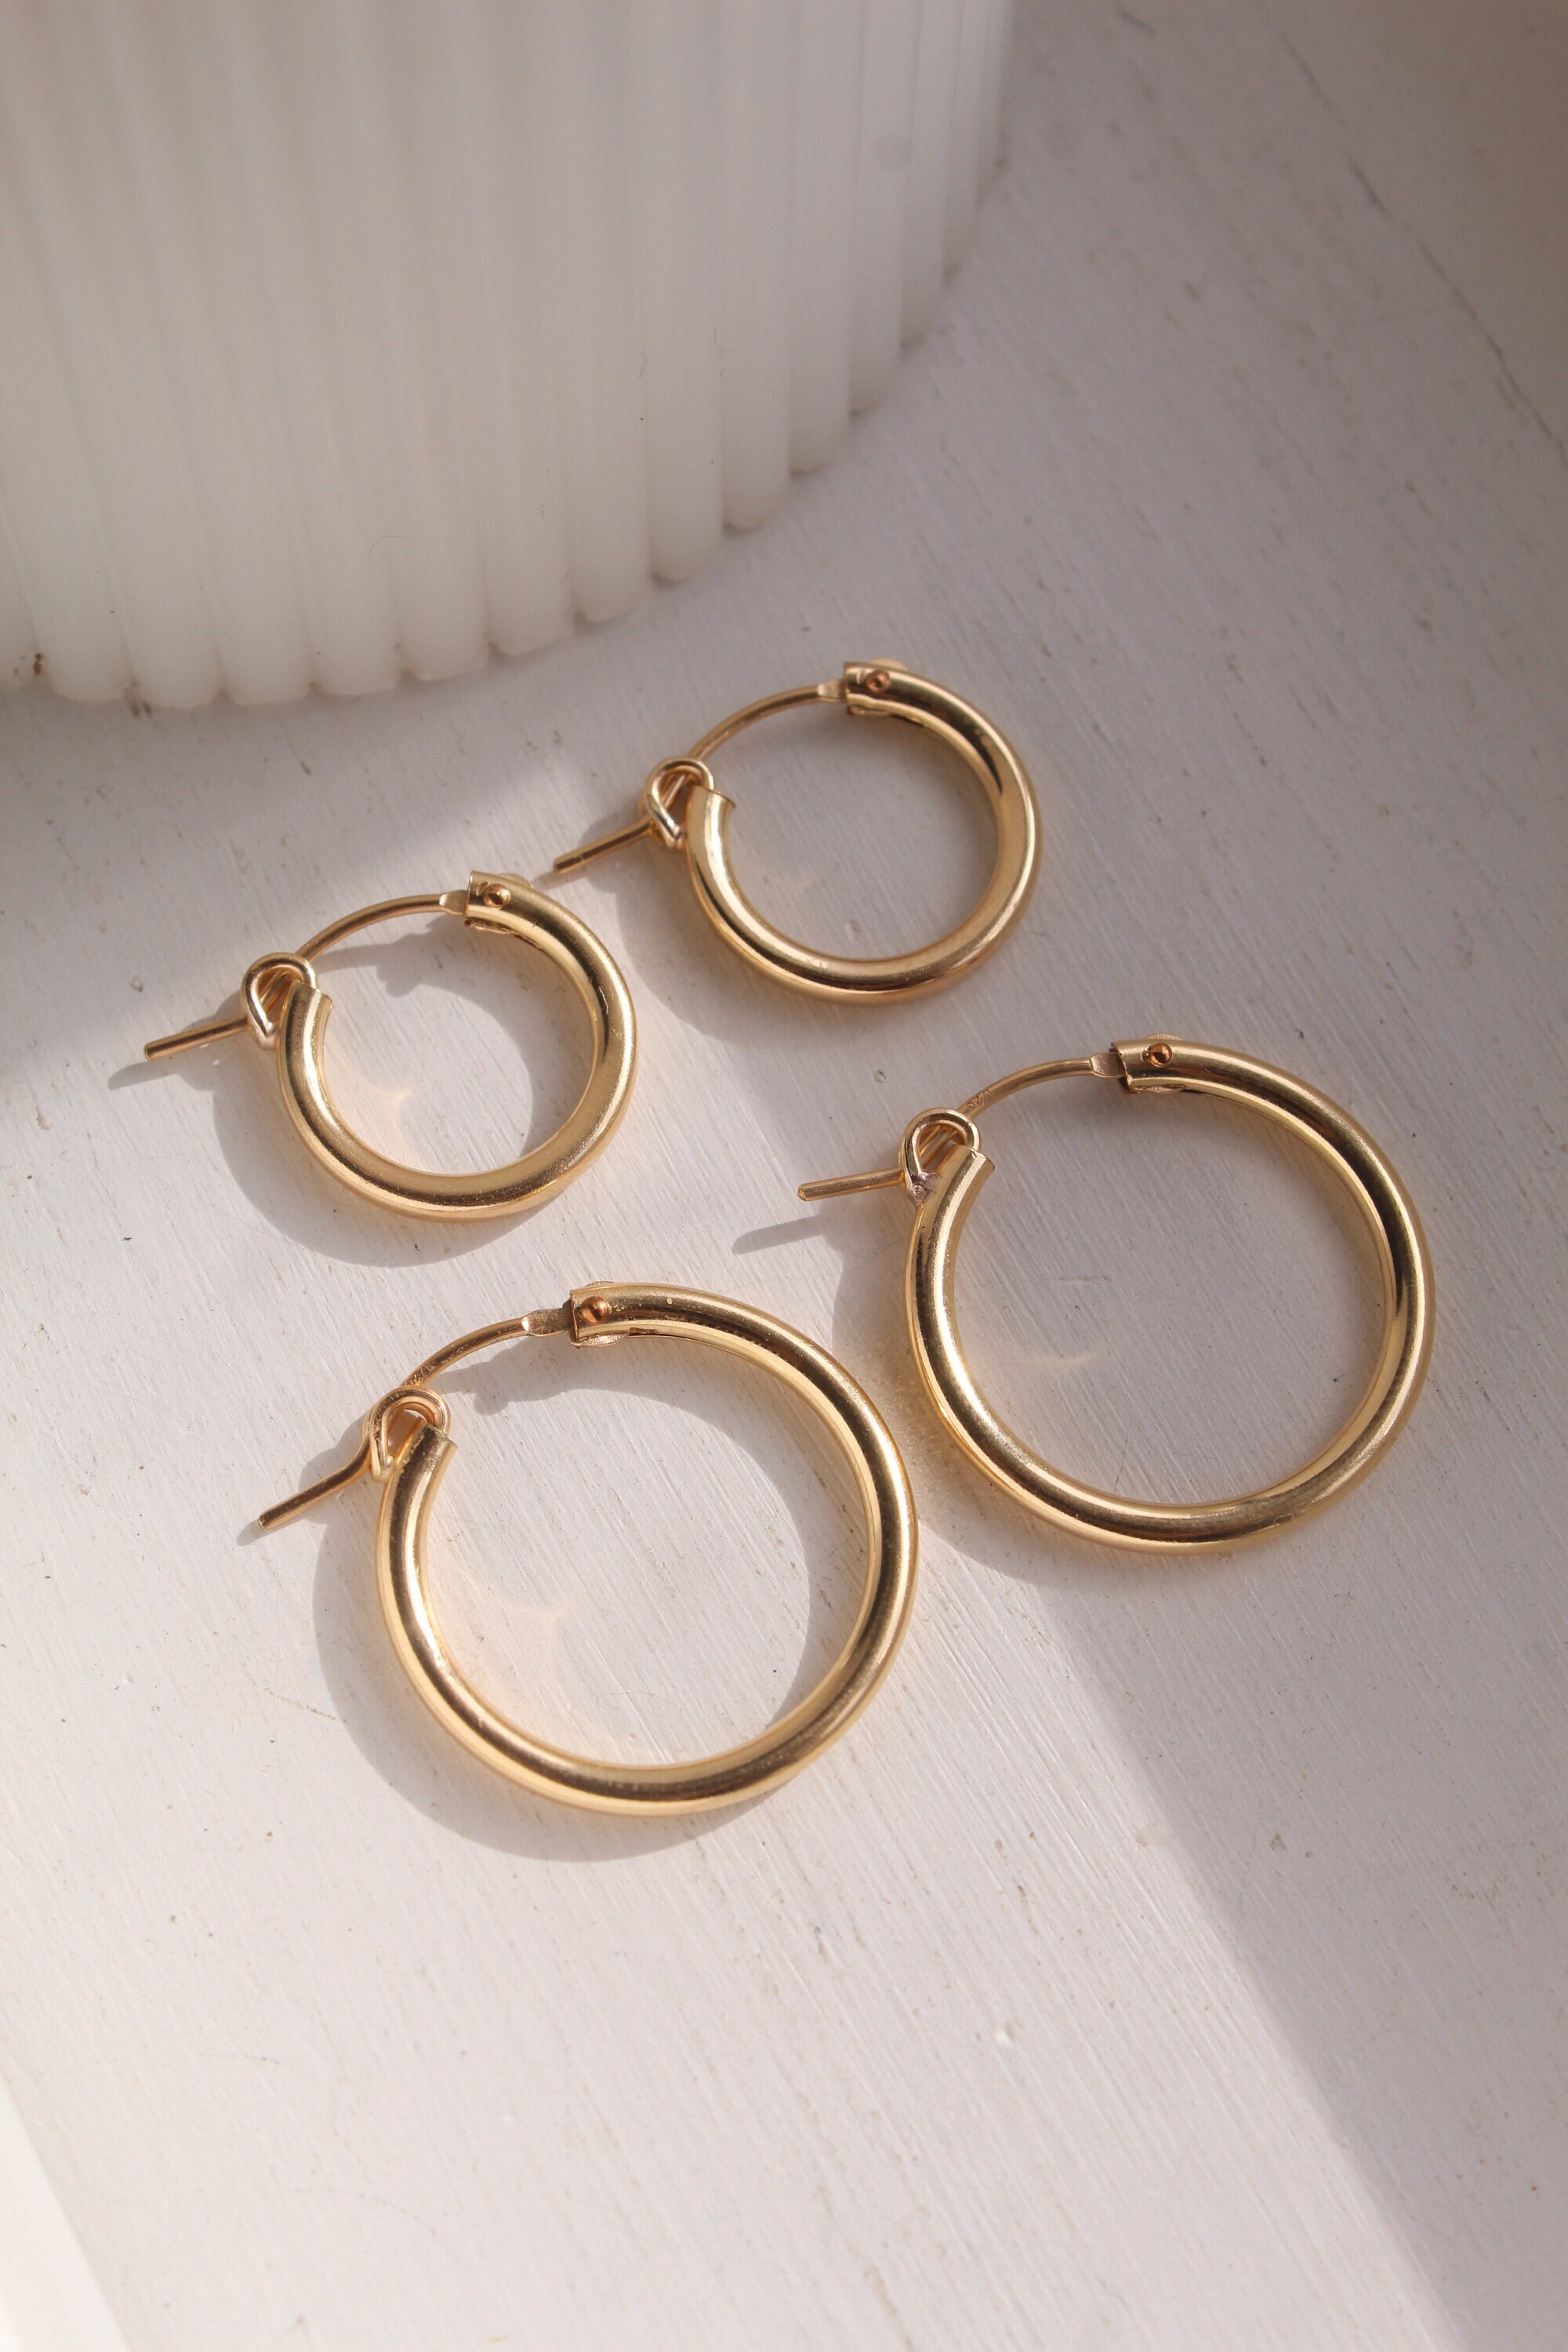 Gold Hoop Earrings Gold Earrings Gold Hoops Hoop Earrings - Etsy UK